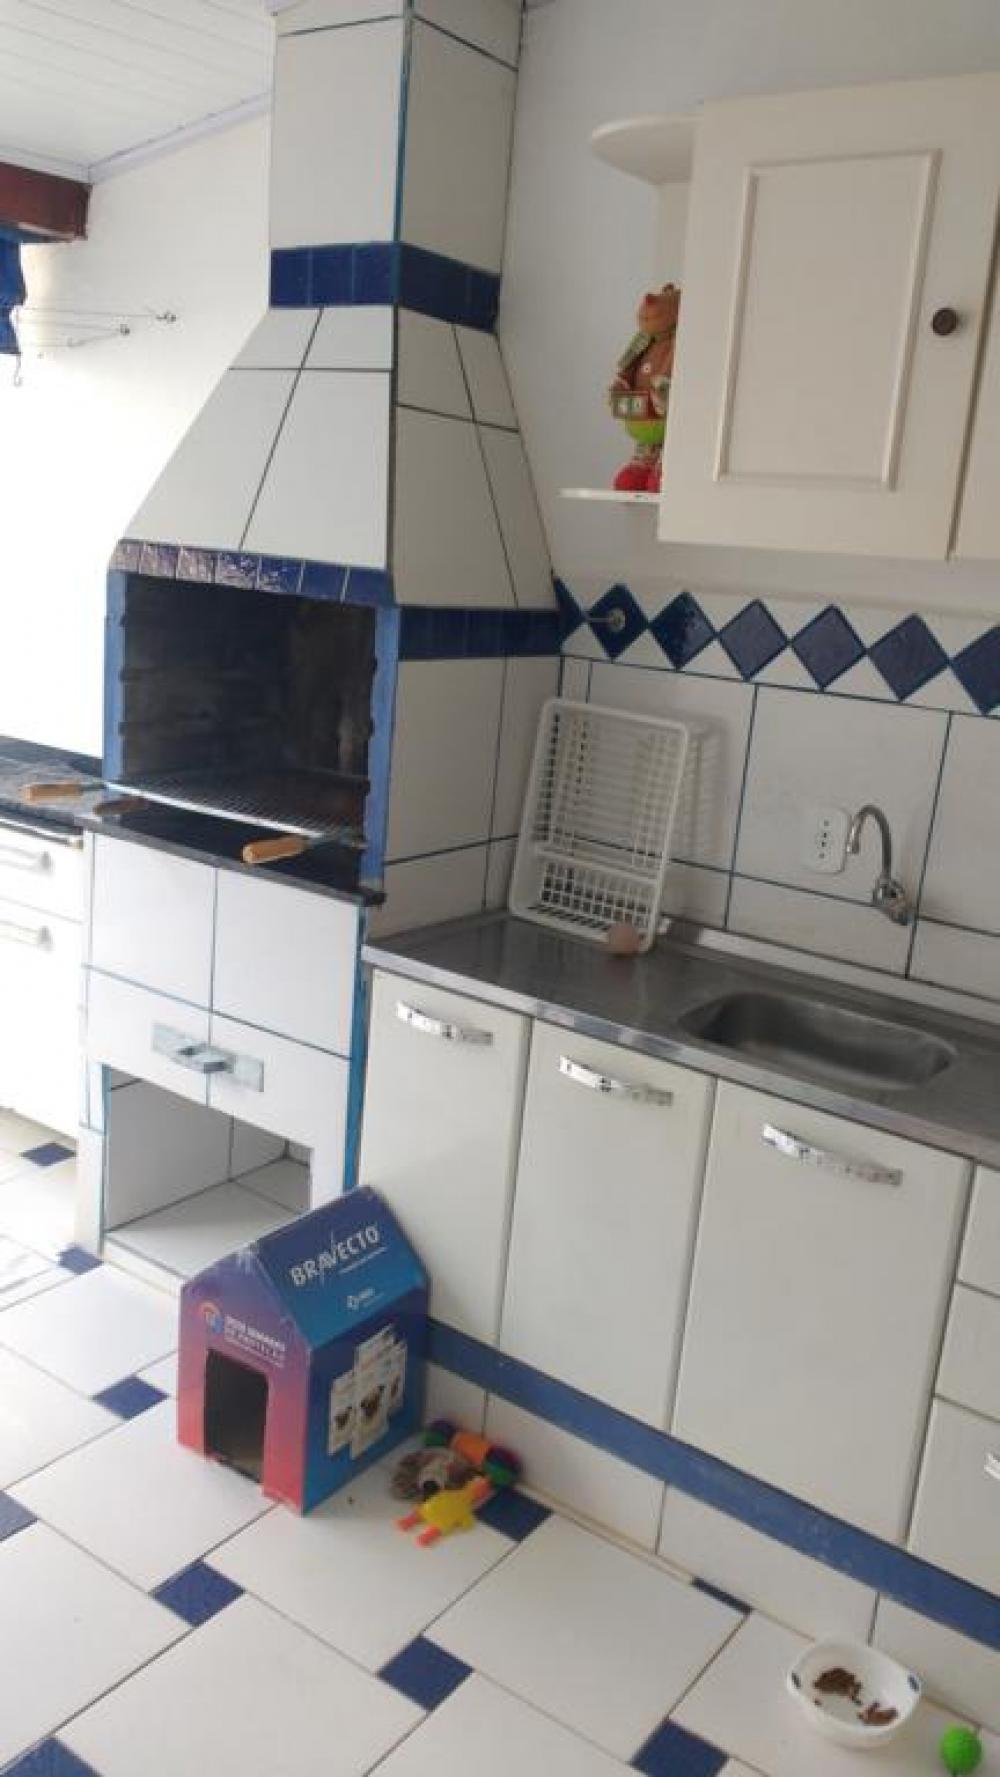 Comprar Casa / Condomínio em São José do Rio Preto apenas R$ 260.000,00 - Foto 14